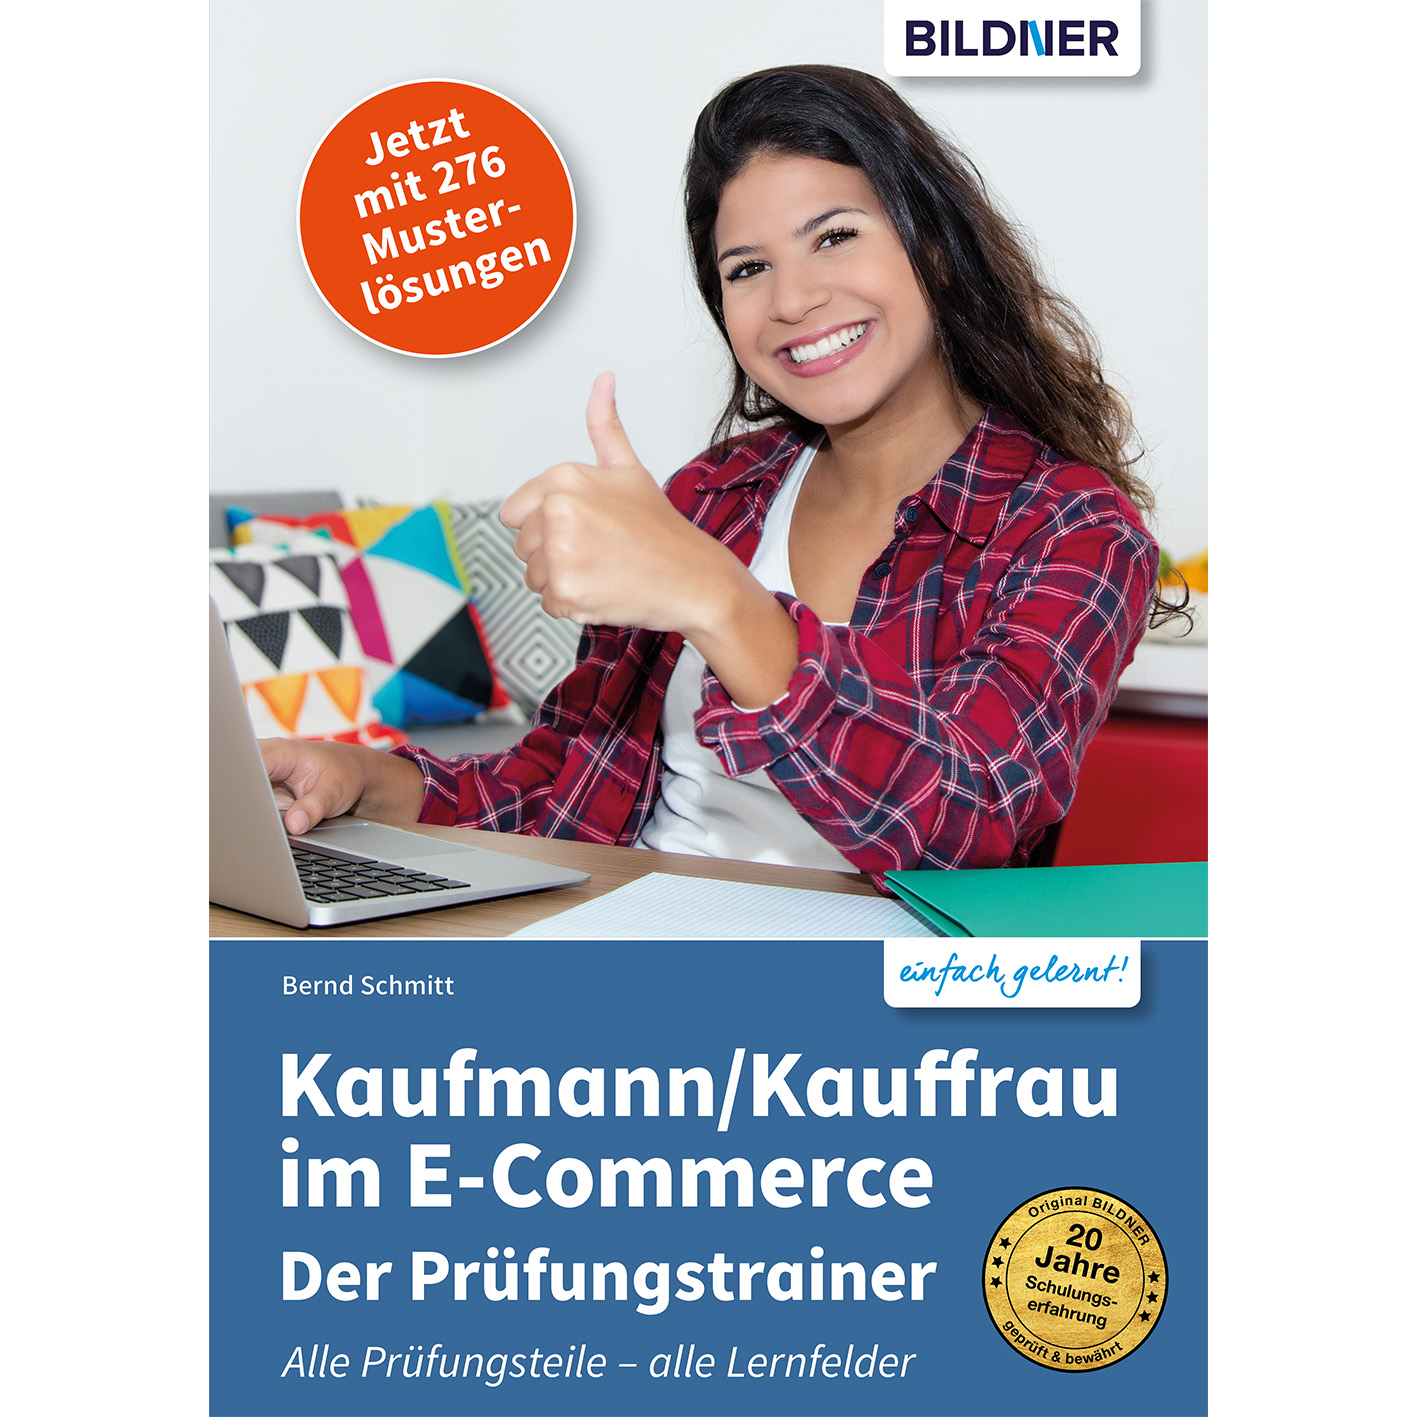 im Prüfungstrainer - Kaufmann/Kauffrau E-Commerce der